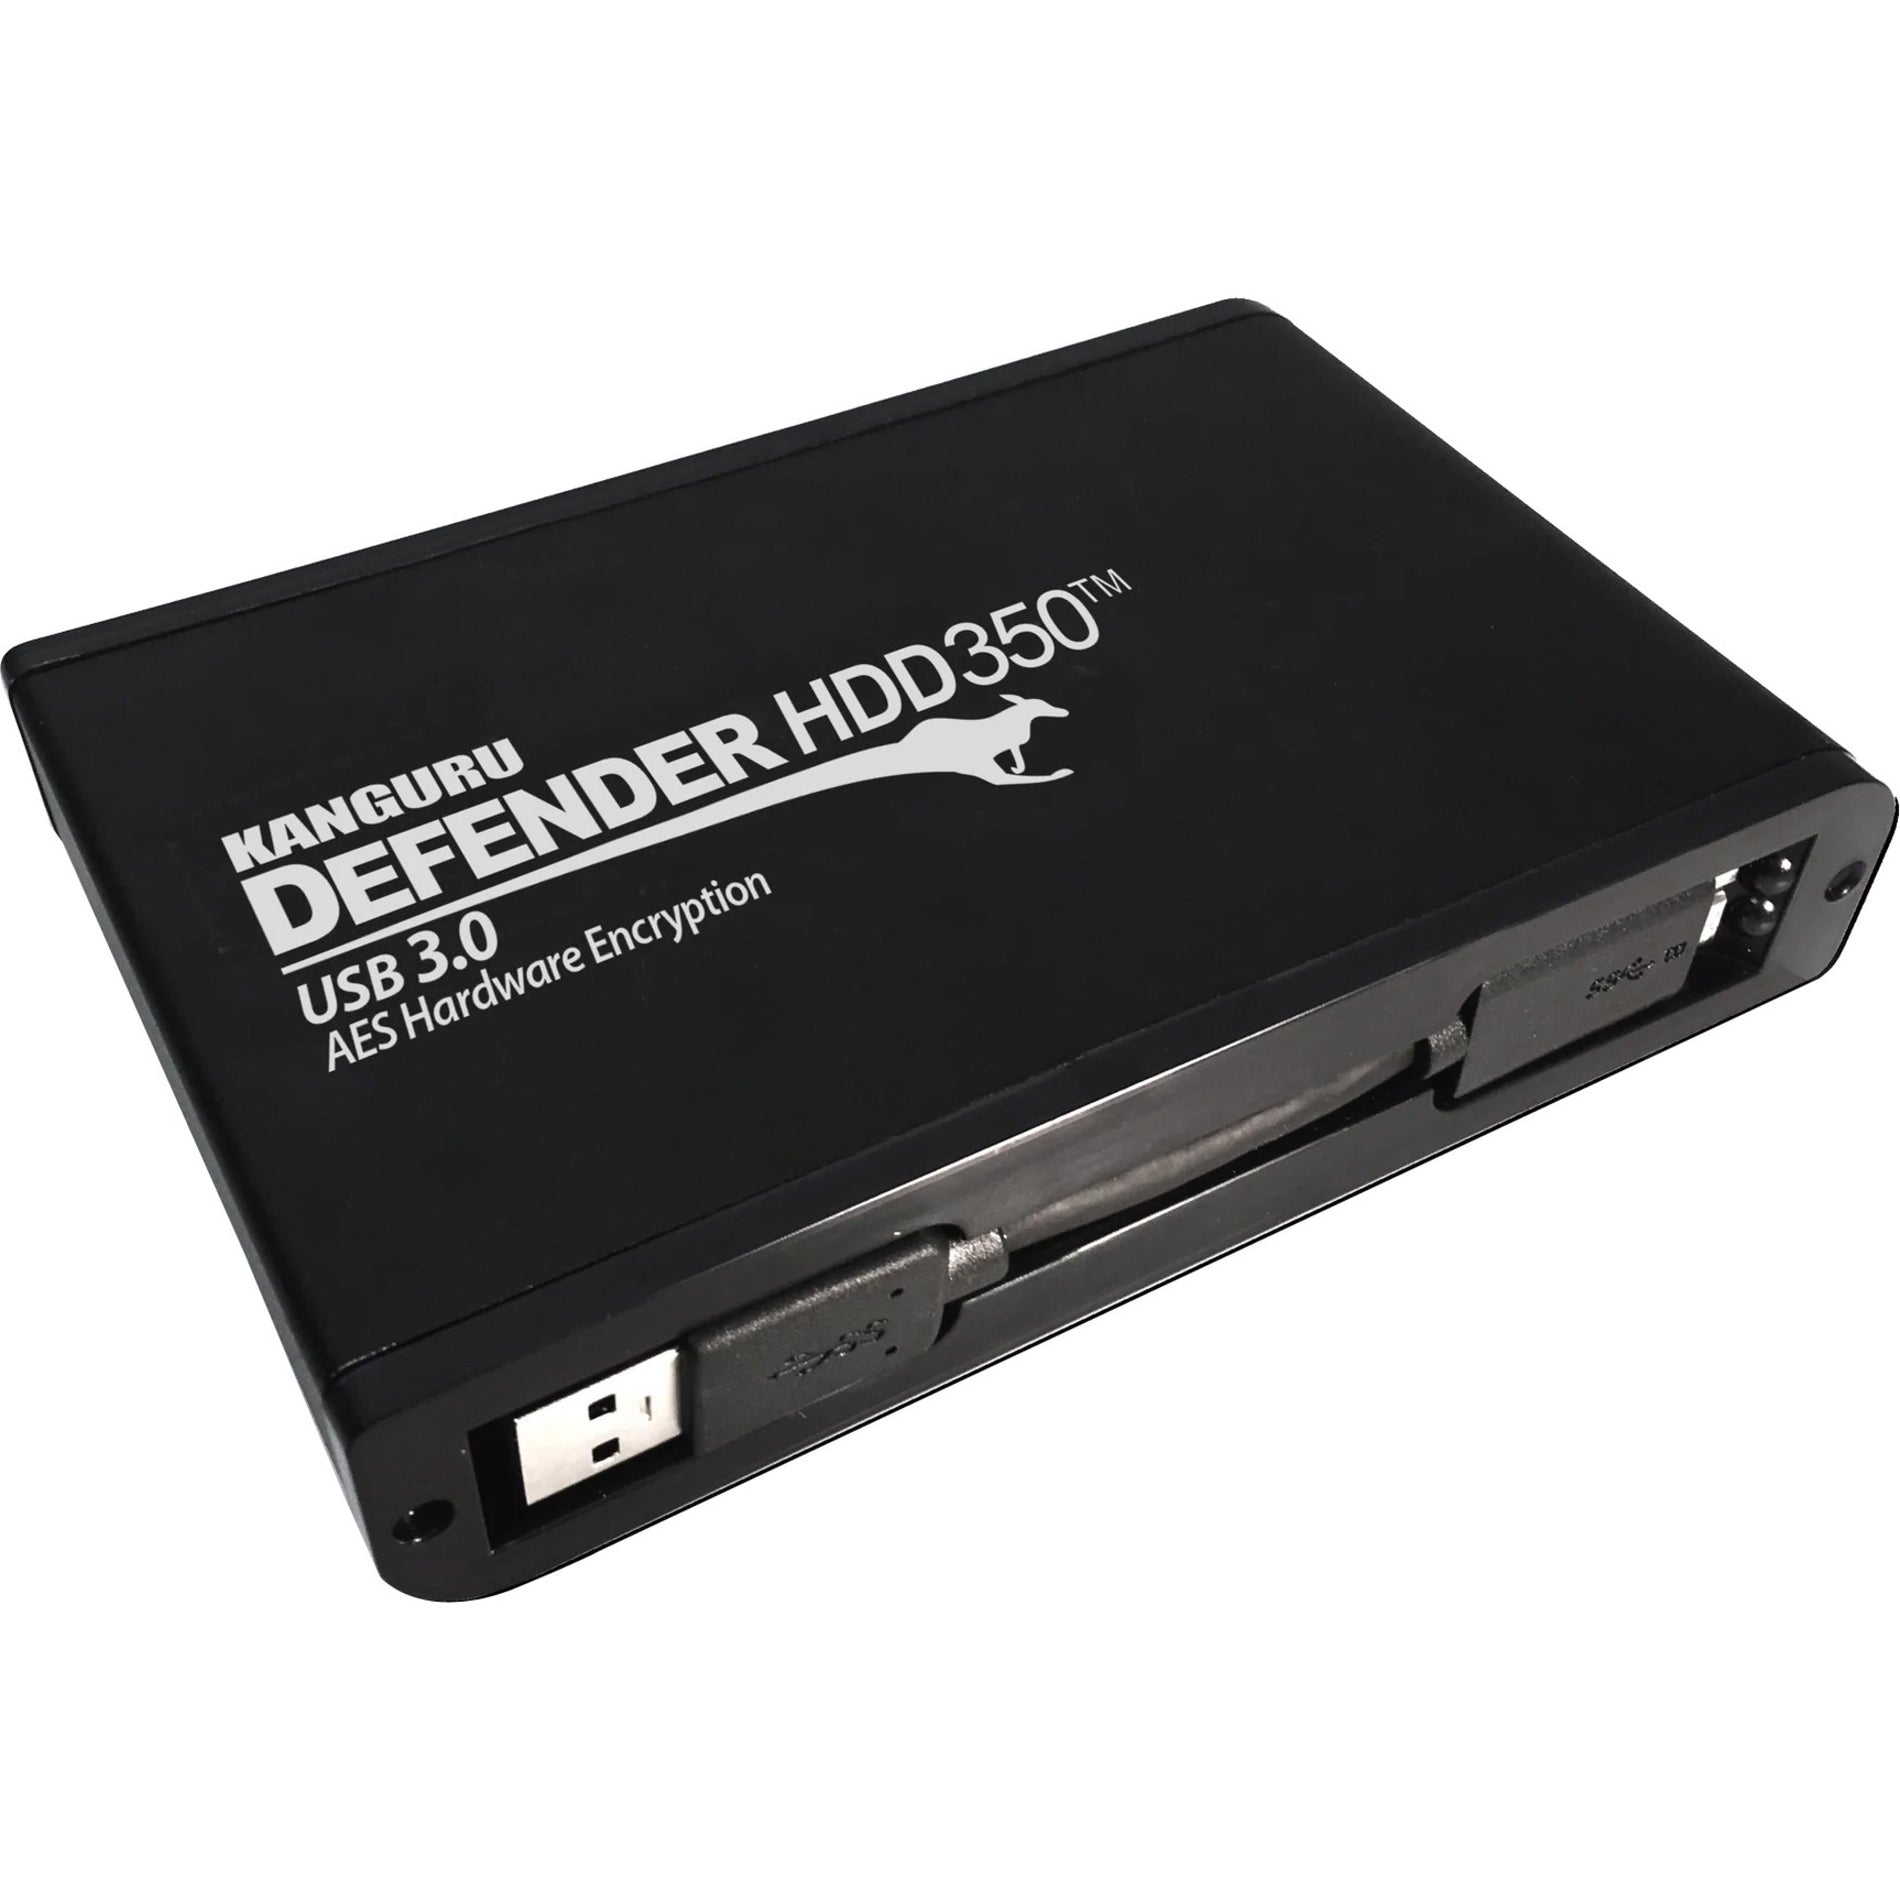 Kanguru KDH3B-350F-2T Defender HDD350 Hard Drive, 2TB Storage Capacity, USB 3.2 (Gen 1) Interface